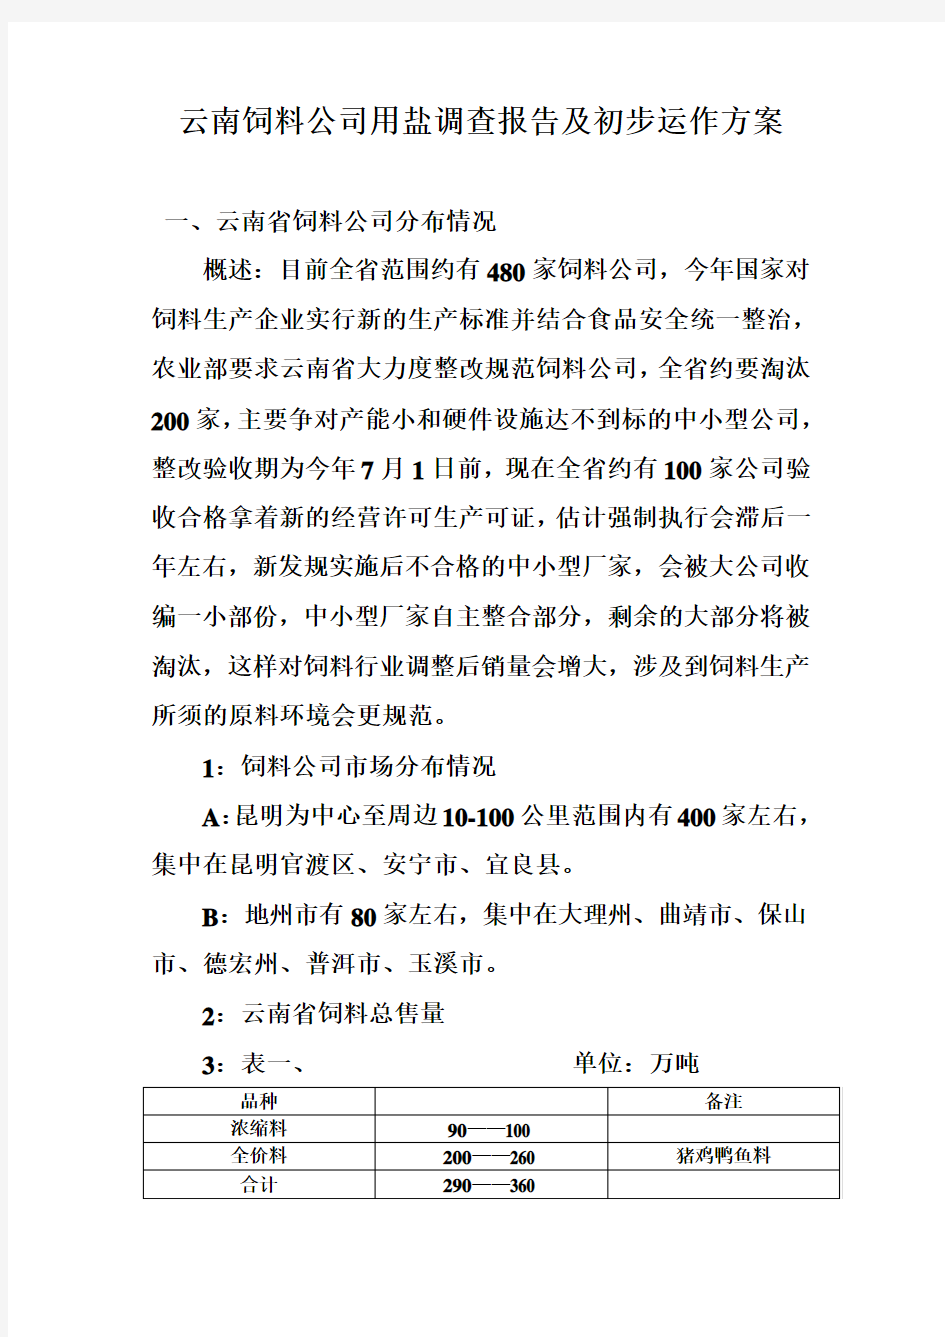 云南省饲料公司用盐调查报告及初步动作方案